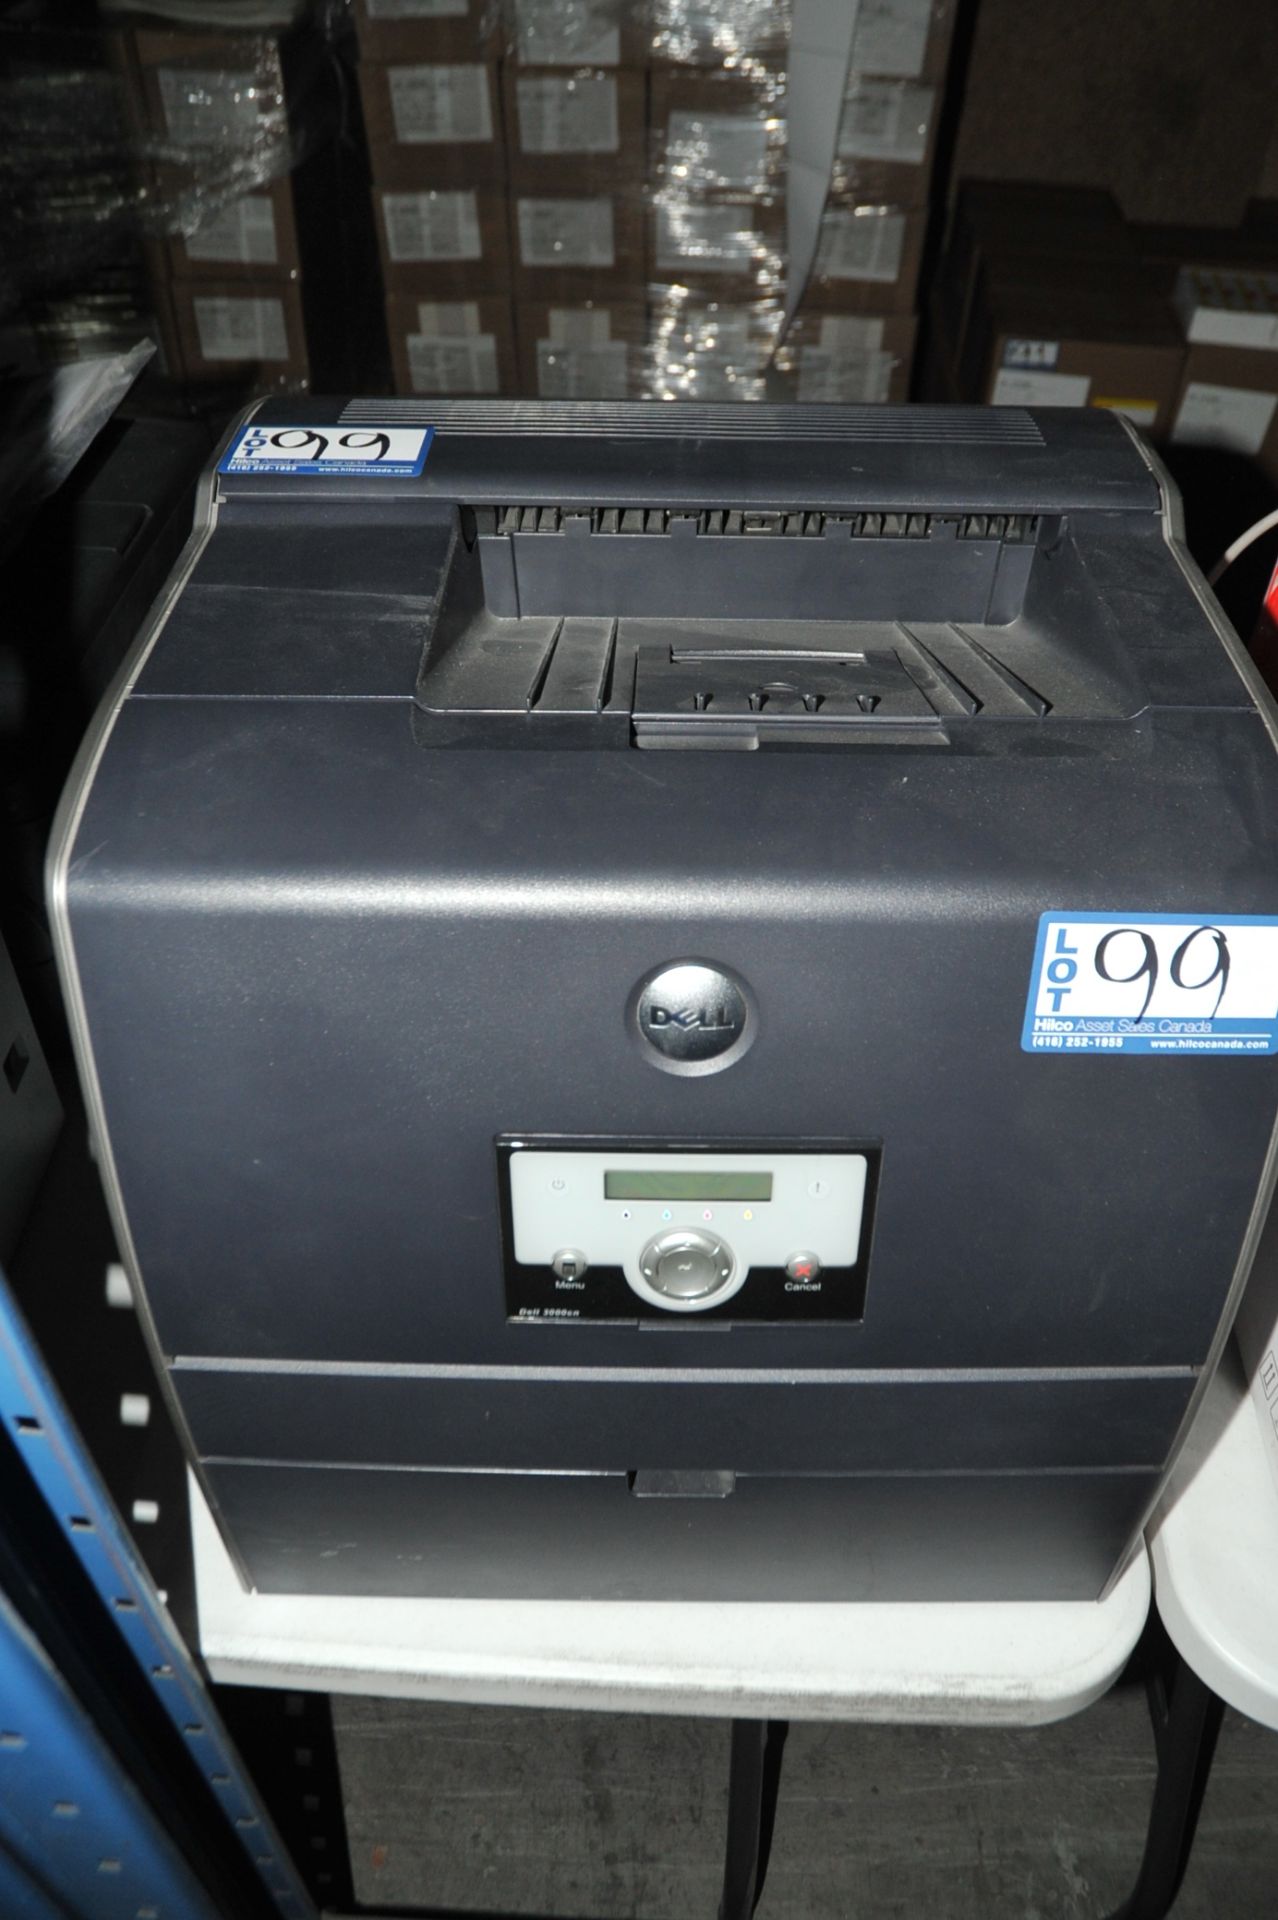 Dell Model 3000CN Color Printer